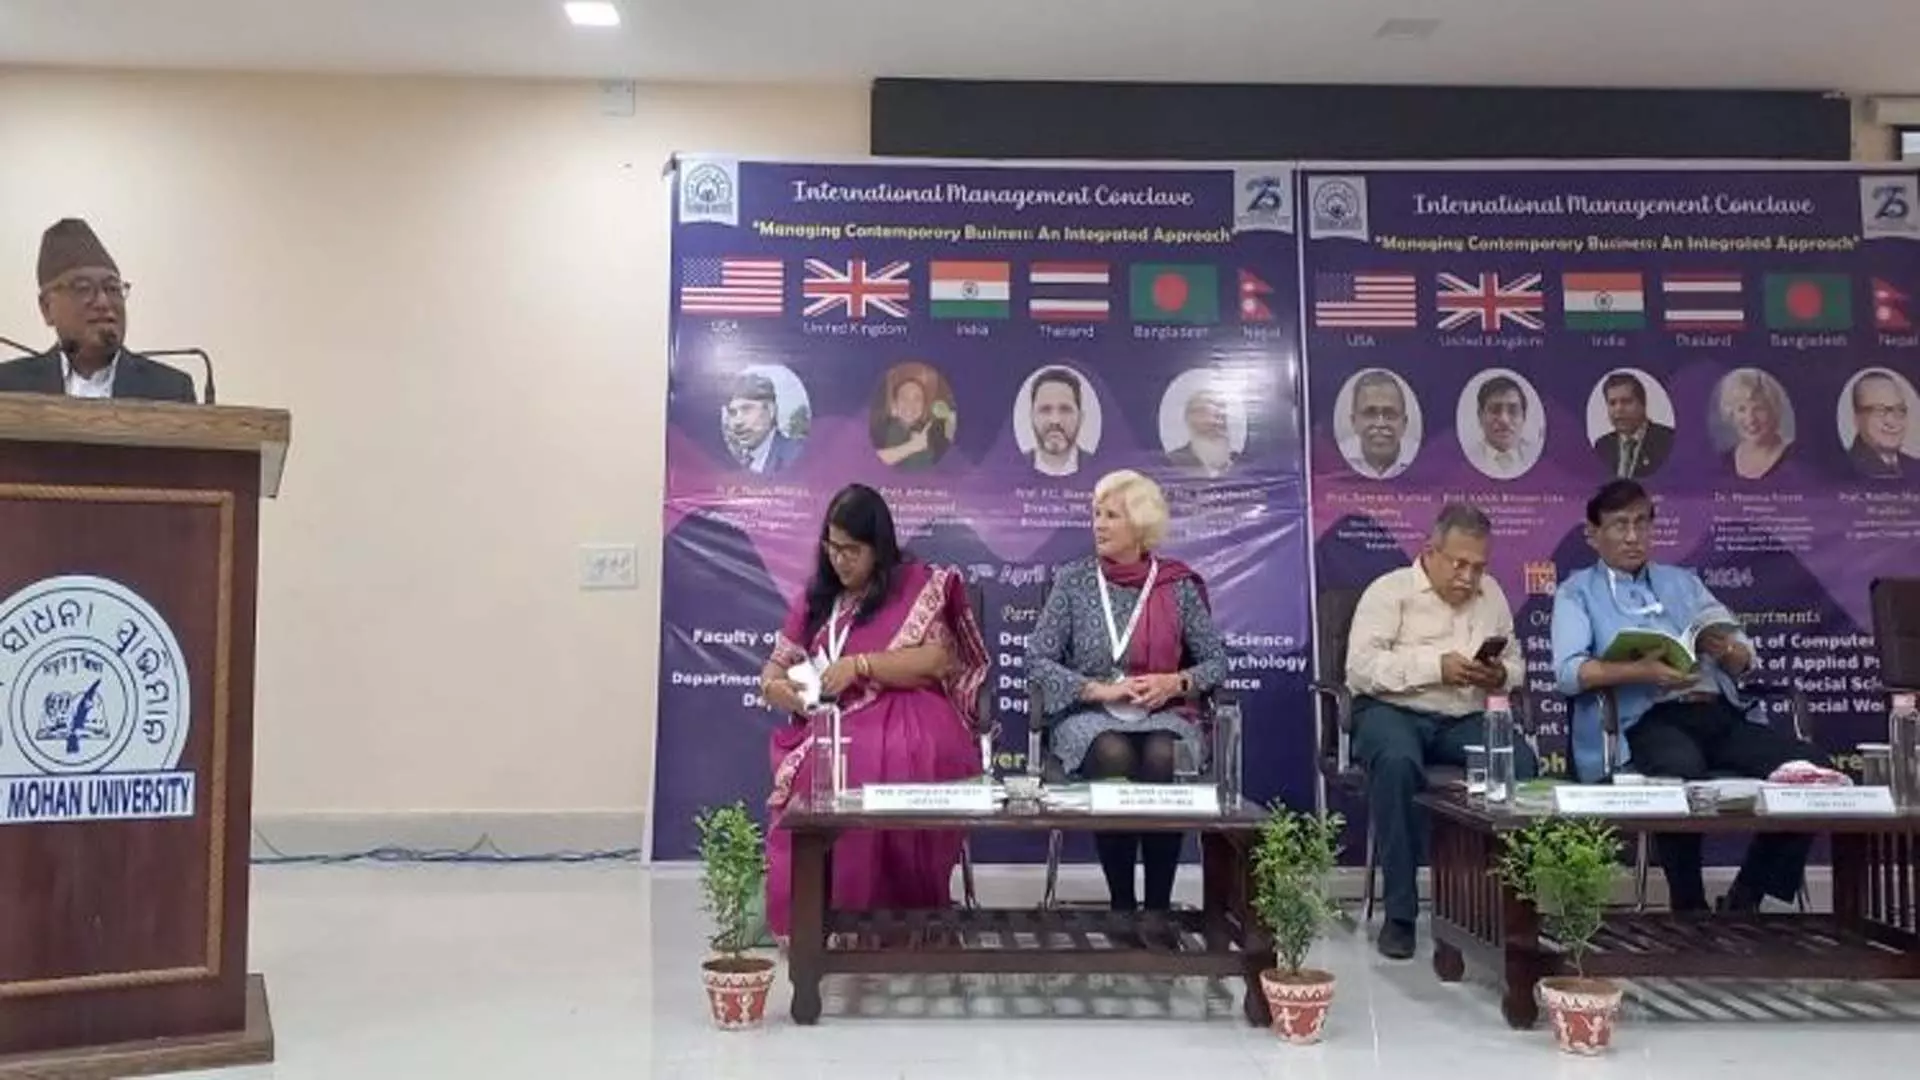 फकीर मोहन विश्वविद्यालय में दो दिवसीय बिजनेस कॉन्क्लेव का समापन